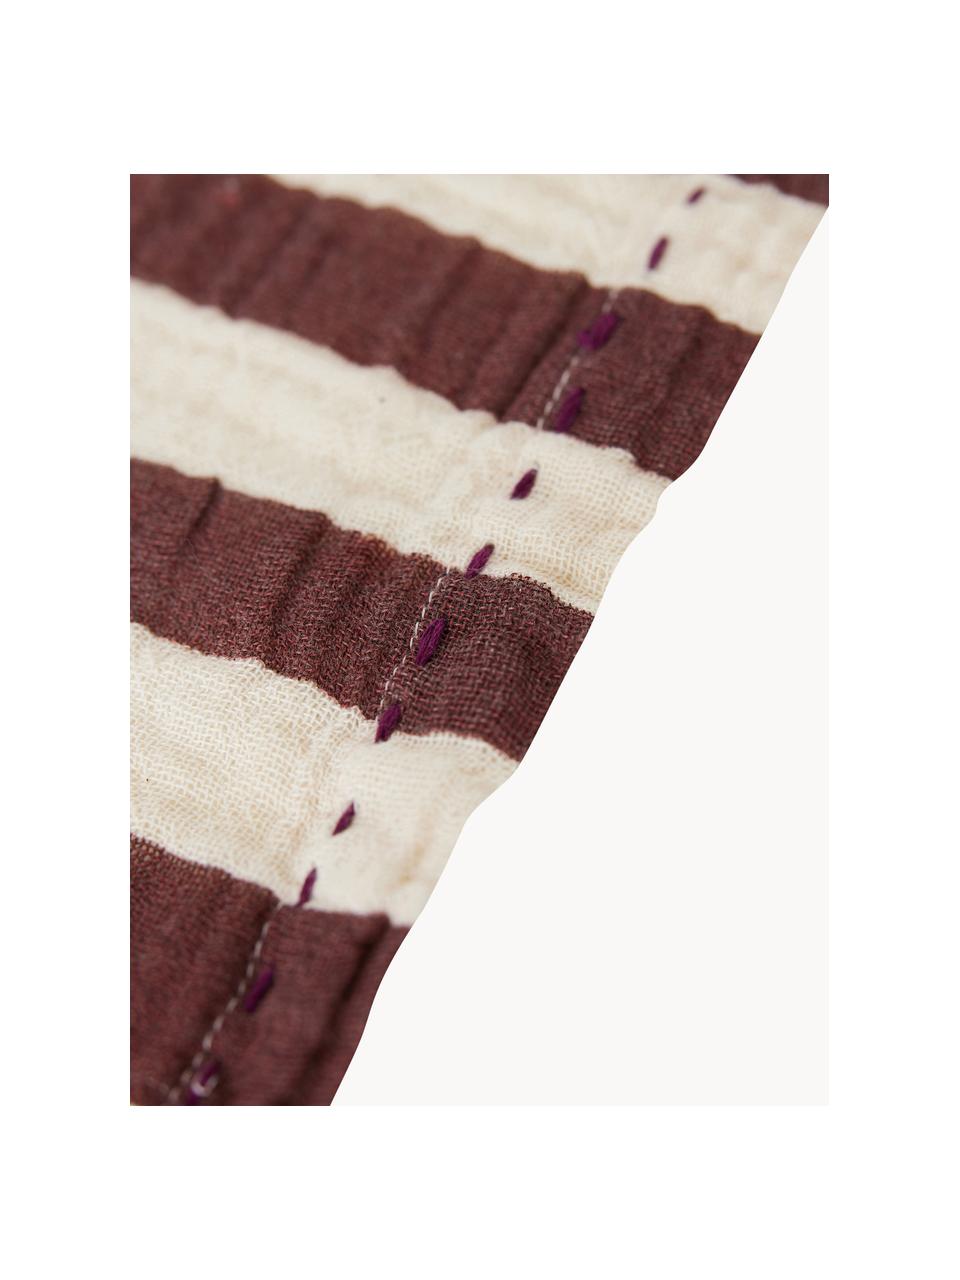 Serviettes de table Striped, 2 pièces, 100 % coton, Blanc, rouge bourgogne, larg. 30 x long. 30 cm